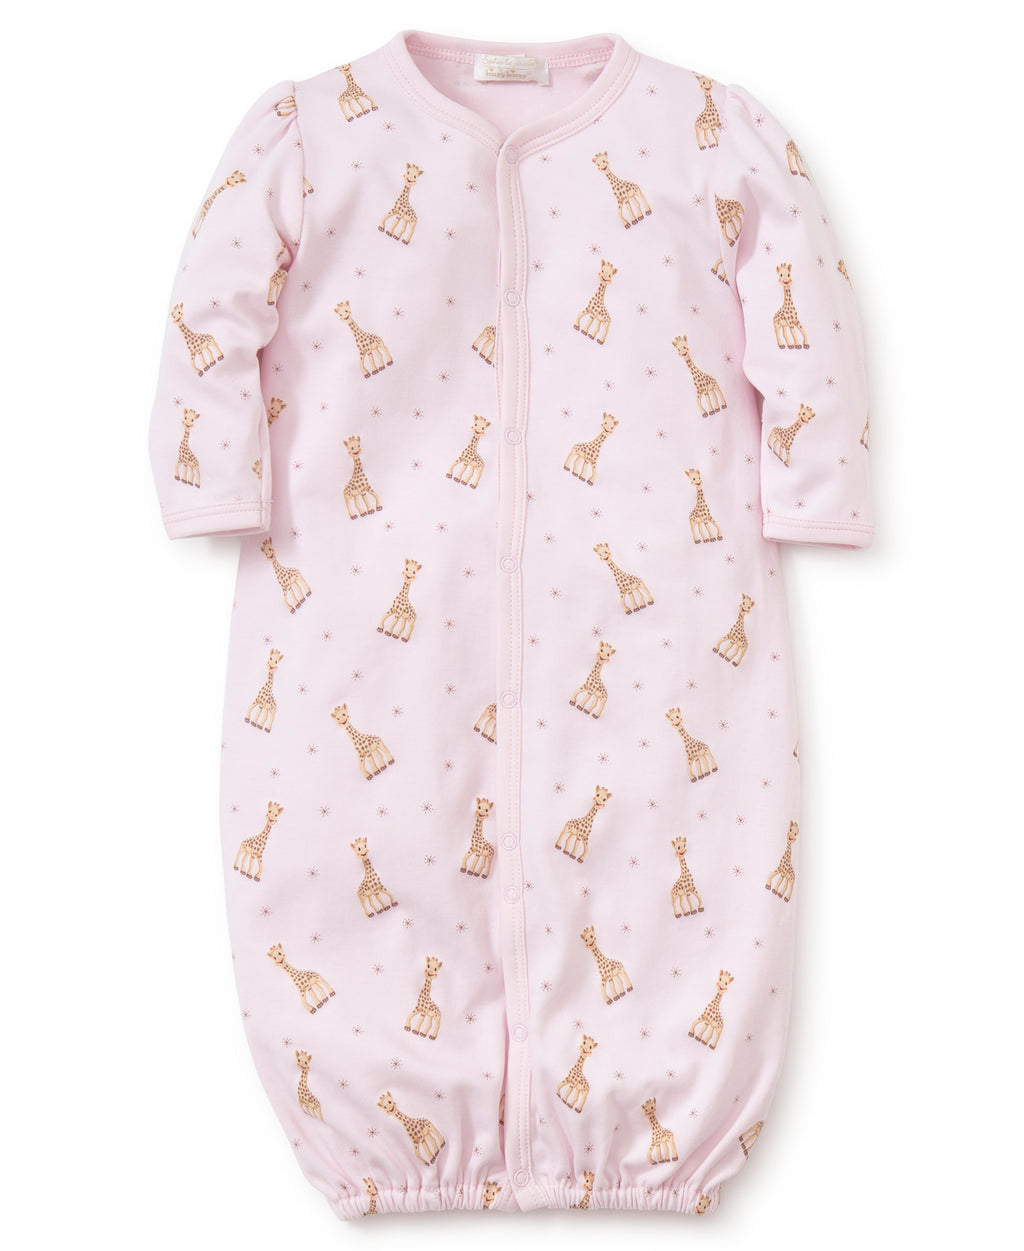 Sophie la girafe Print Converter Gown - Kissy Kissy